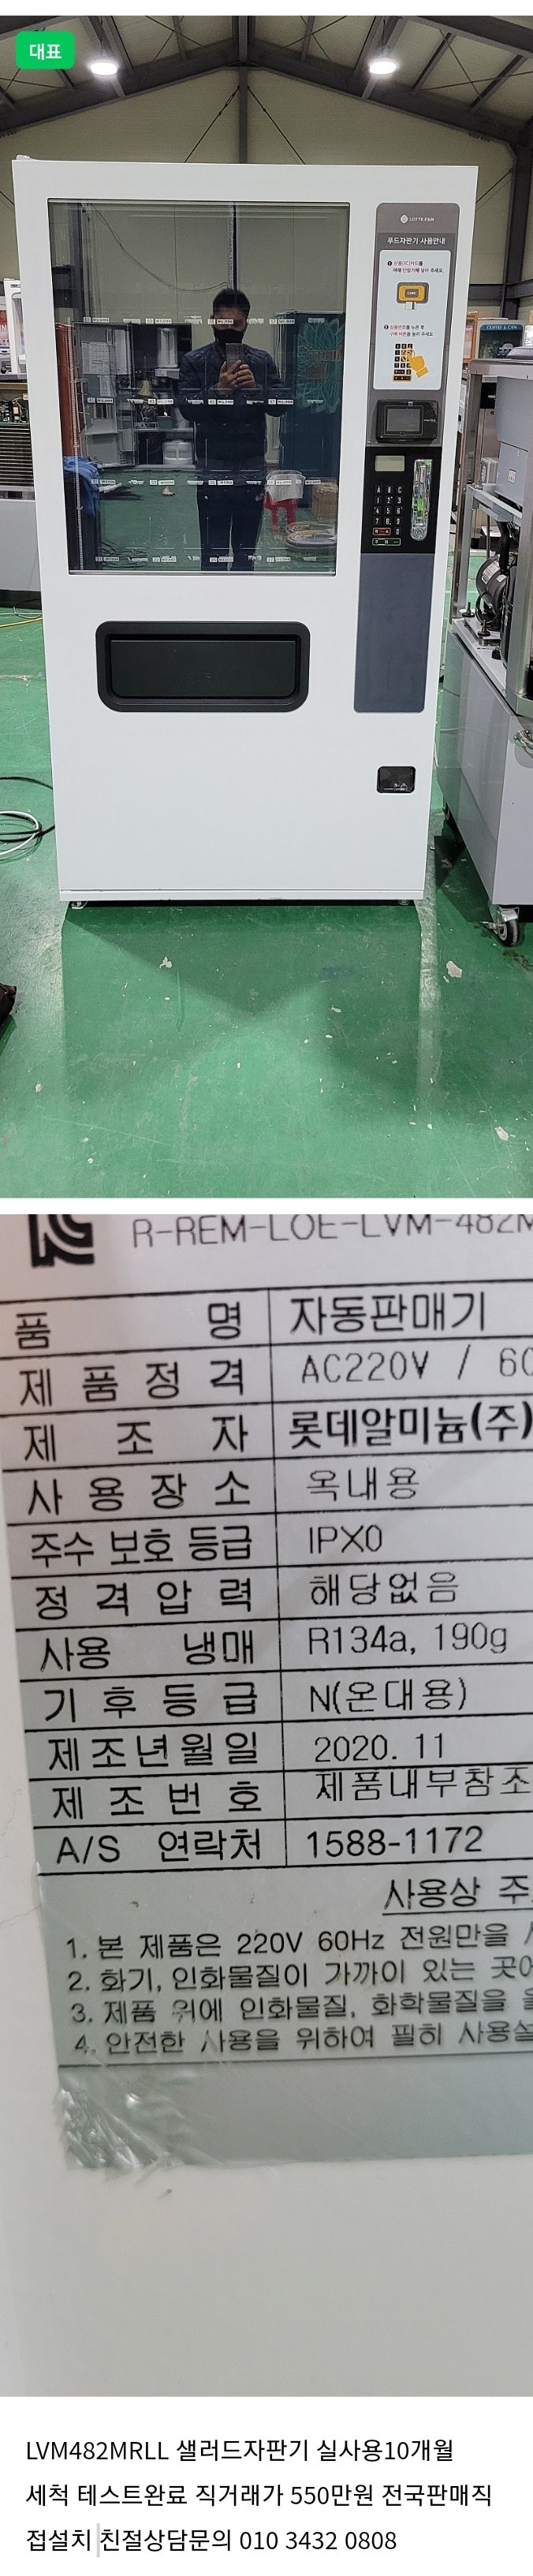 판매 롯데최신형 올벨트 멀티자판기 샐러드자판기LVM482MRLL